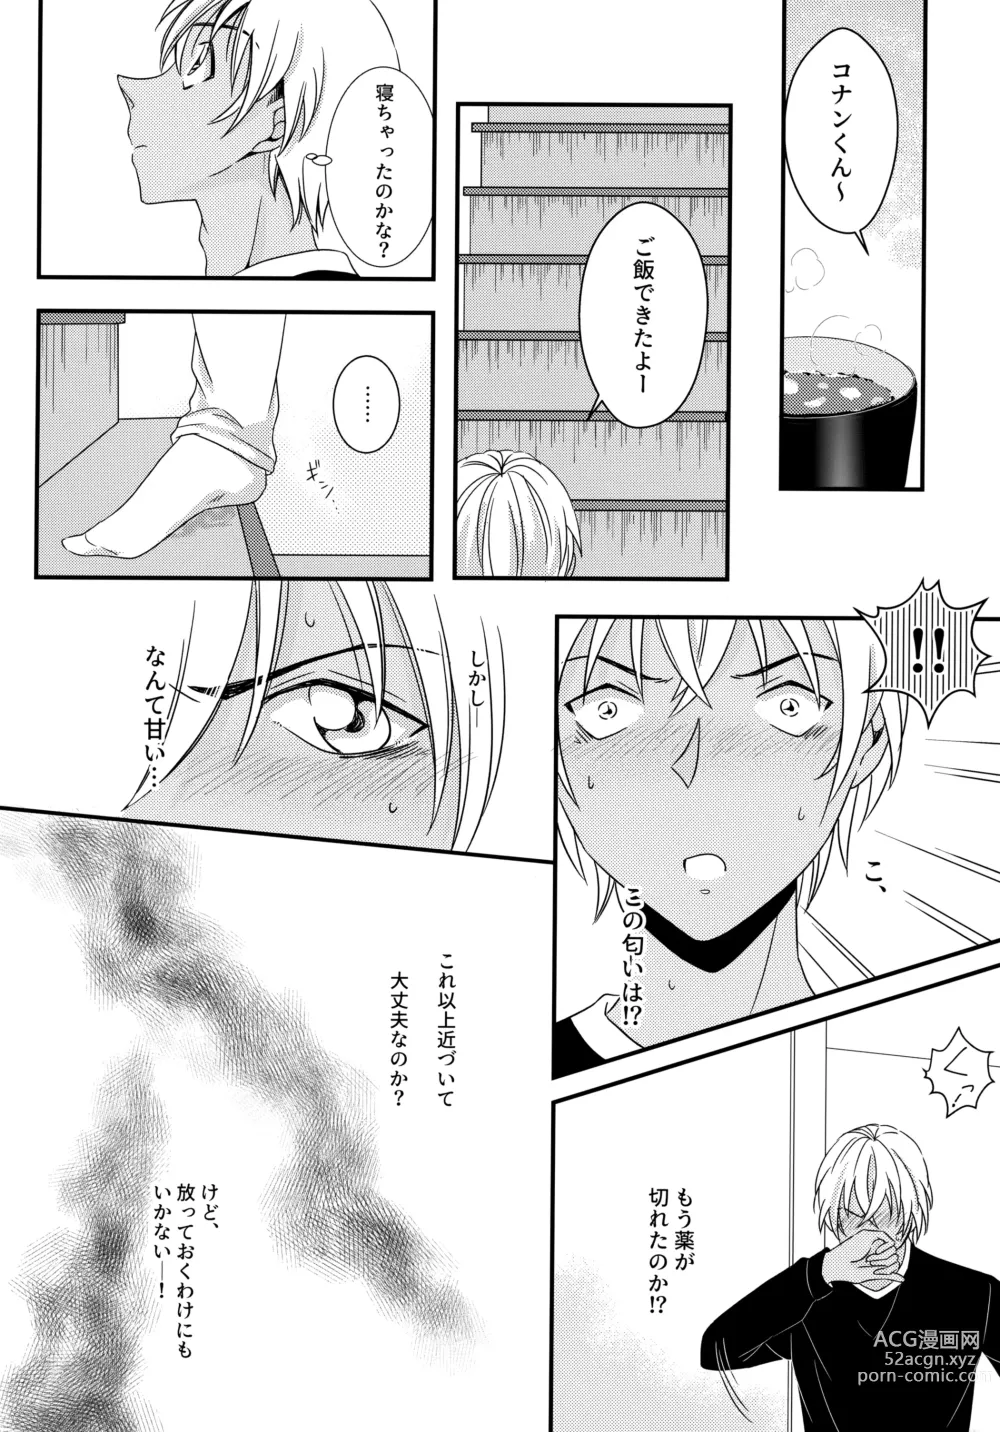 Page 7 of doujinshi Kimi to Himitsu no 7 Kakan